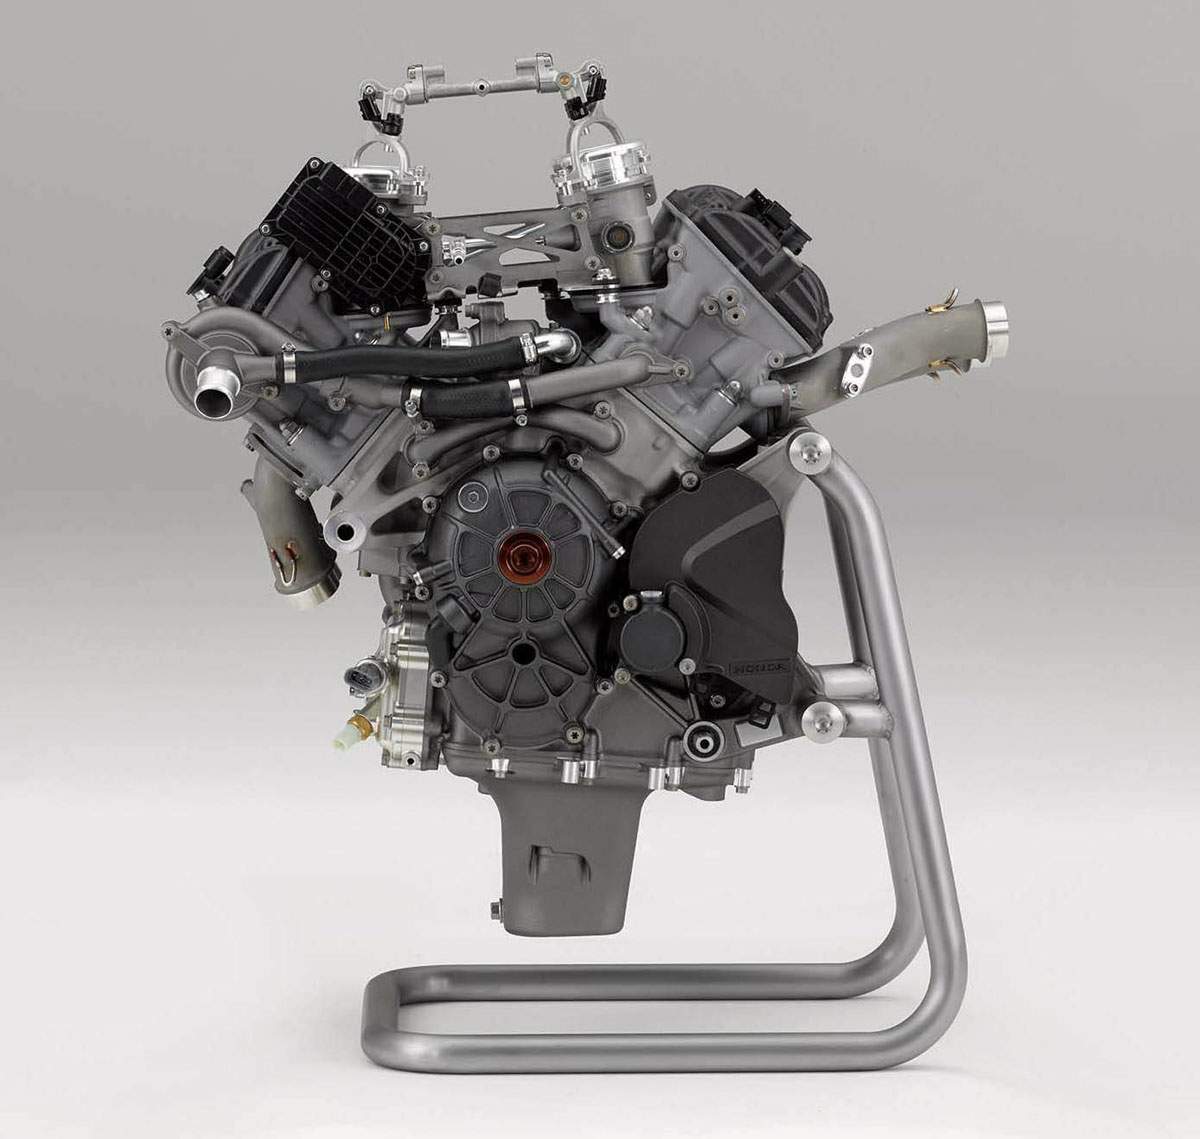 Двигатель прототипа Honda RC213V - самая дорогая часть мотоцикла